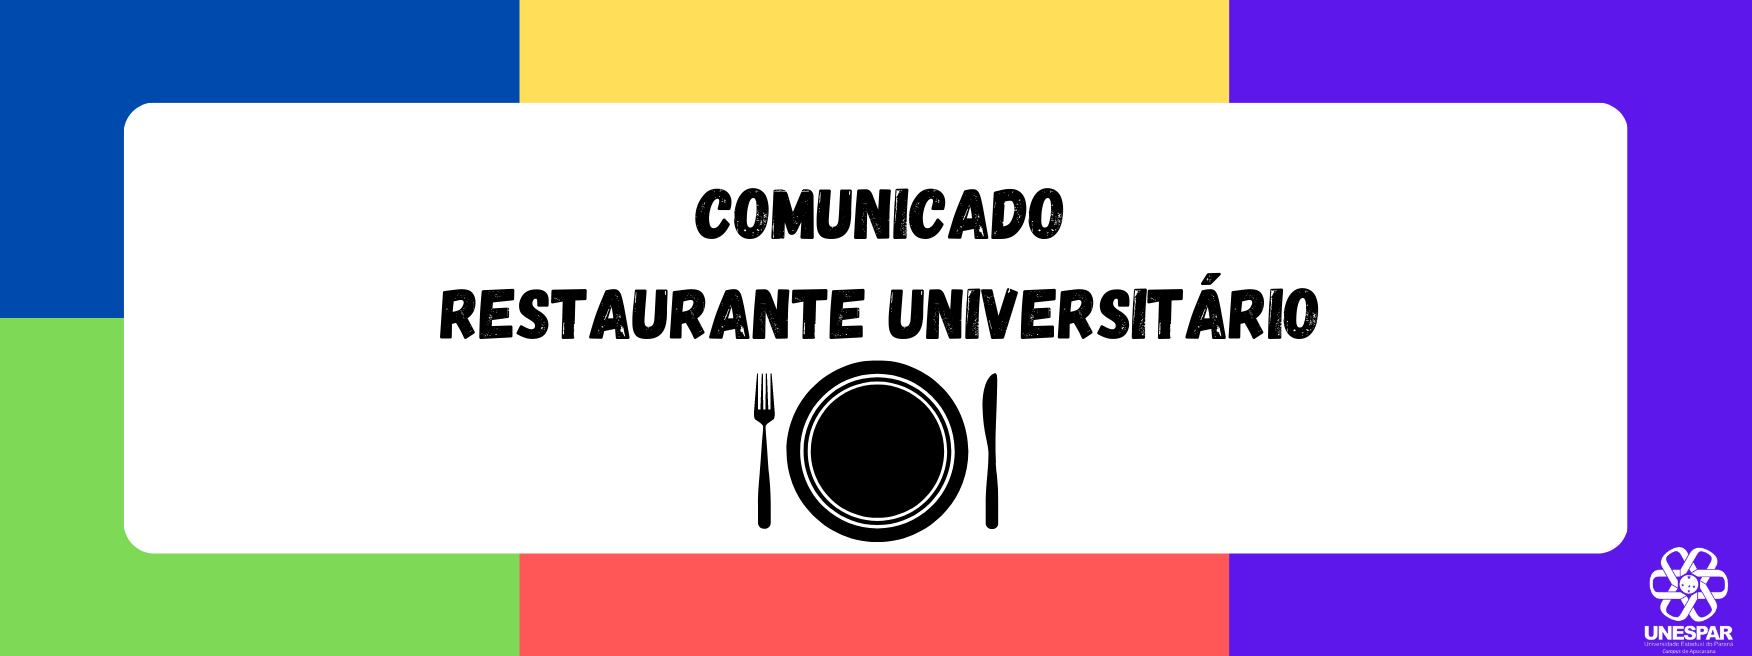 COMUNICADO - Restaurante Universitário